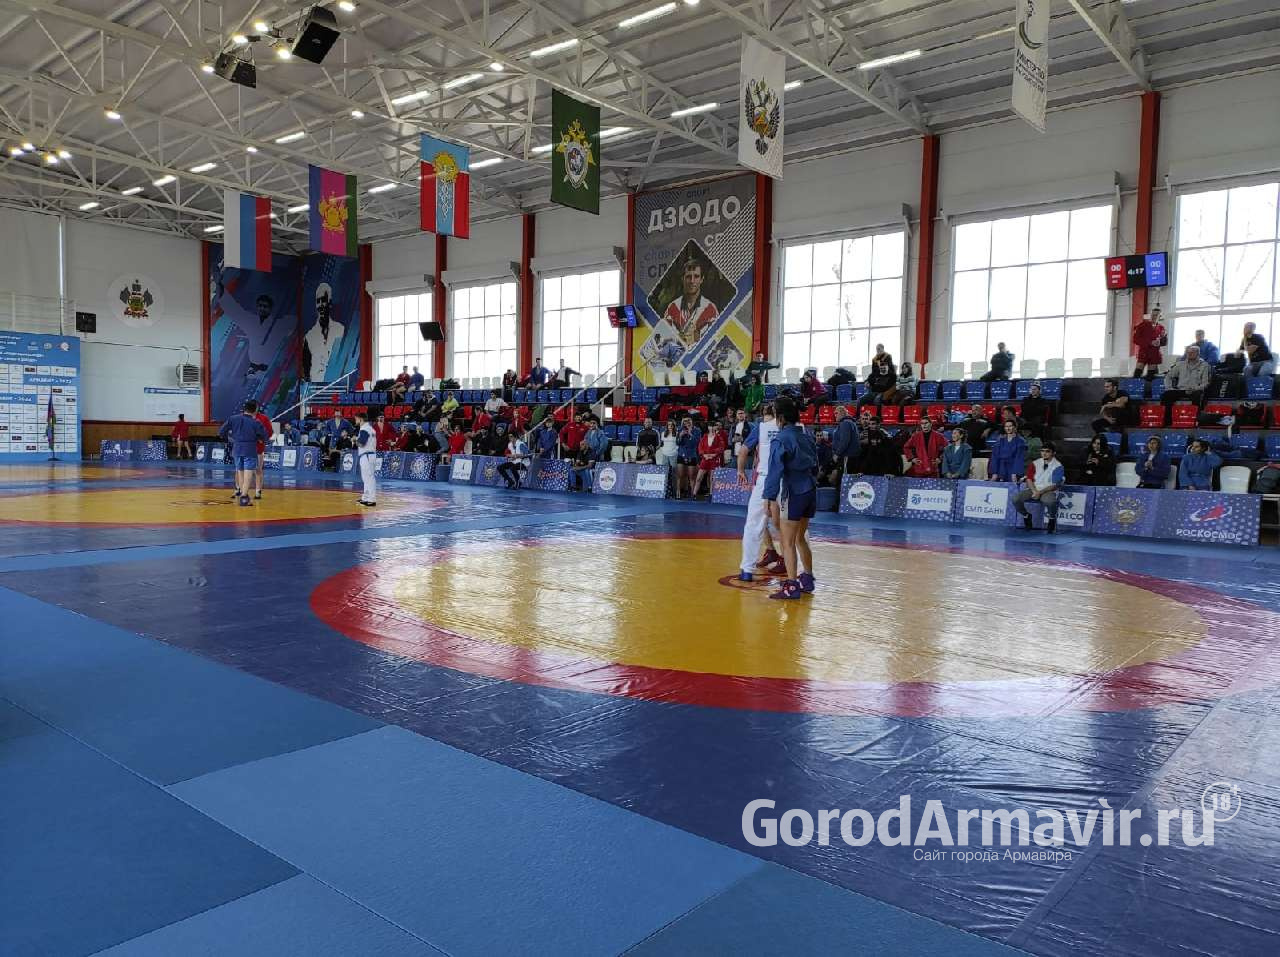 Горлеон Амбарцумян из Армавира завоевал золотую медаль Всероссийского турнира по самбо